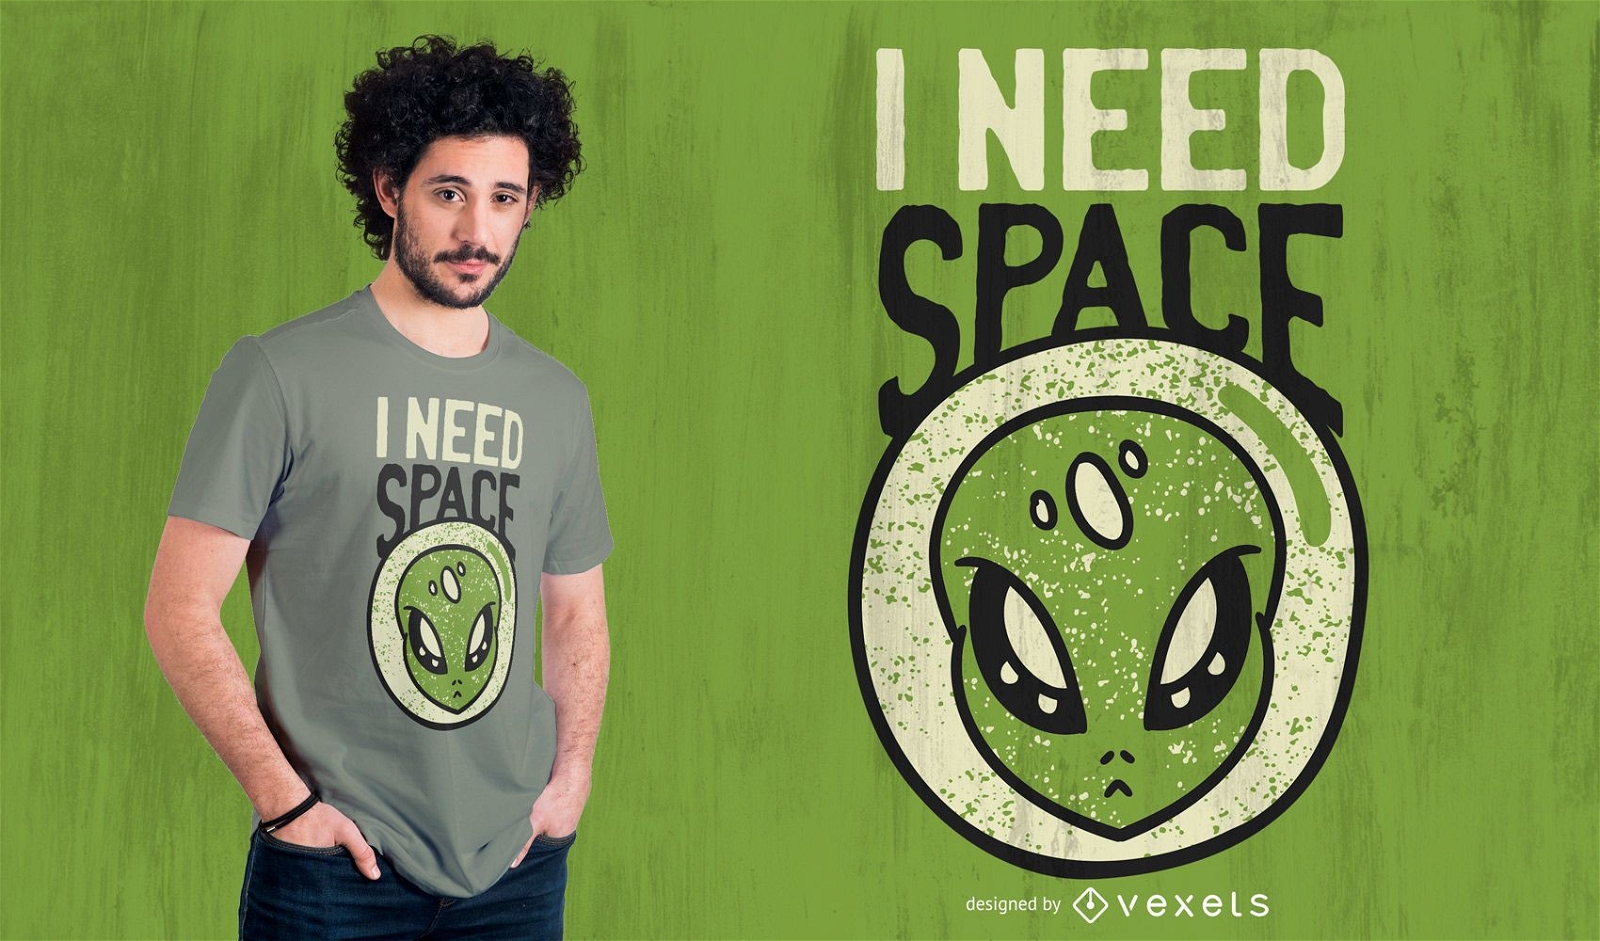 Necesito dise?o de camiseta alien?gena espacial